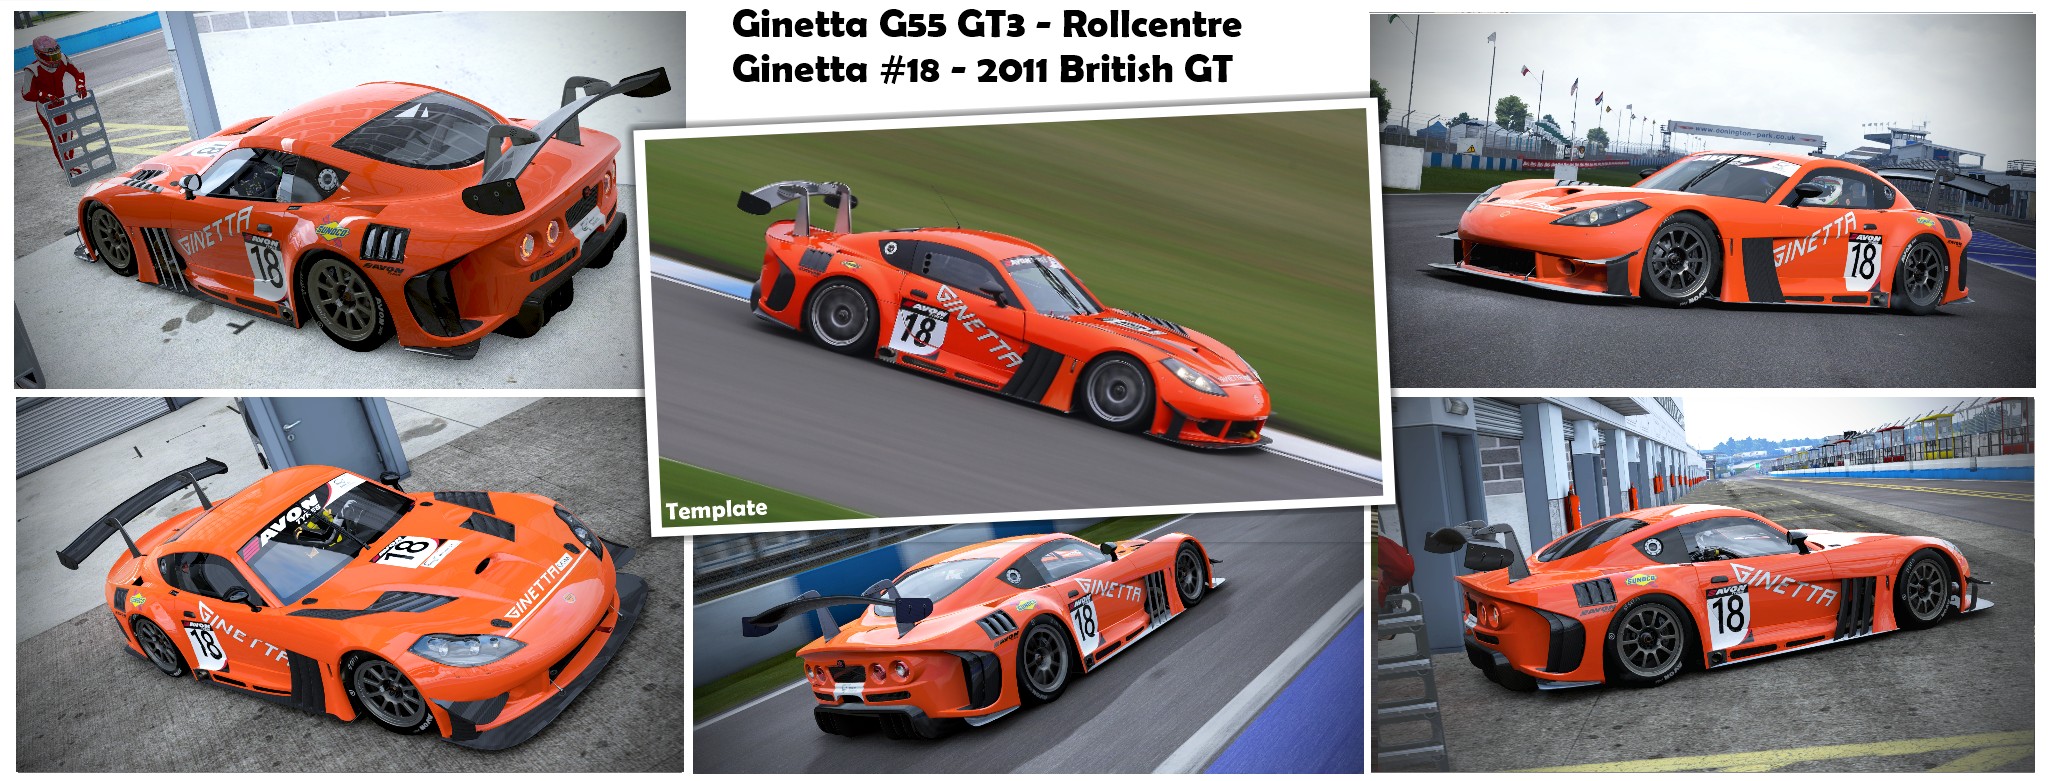 Rollcentre Ginetta #18 - 2011 British GT.jpg